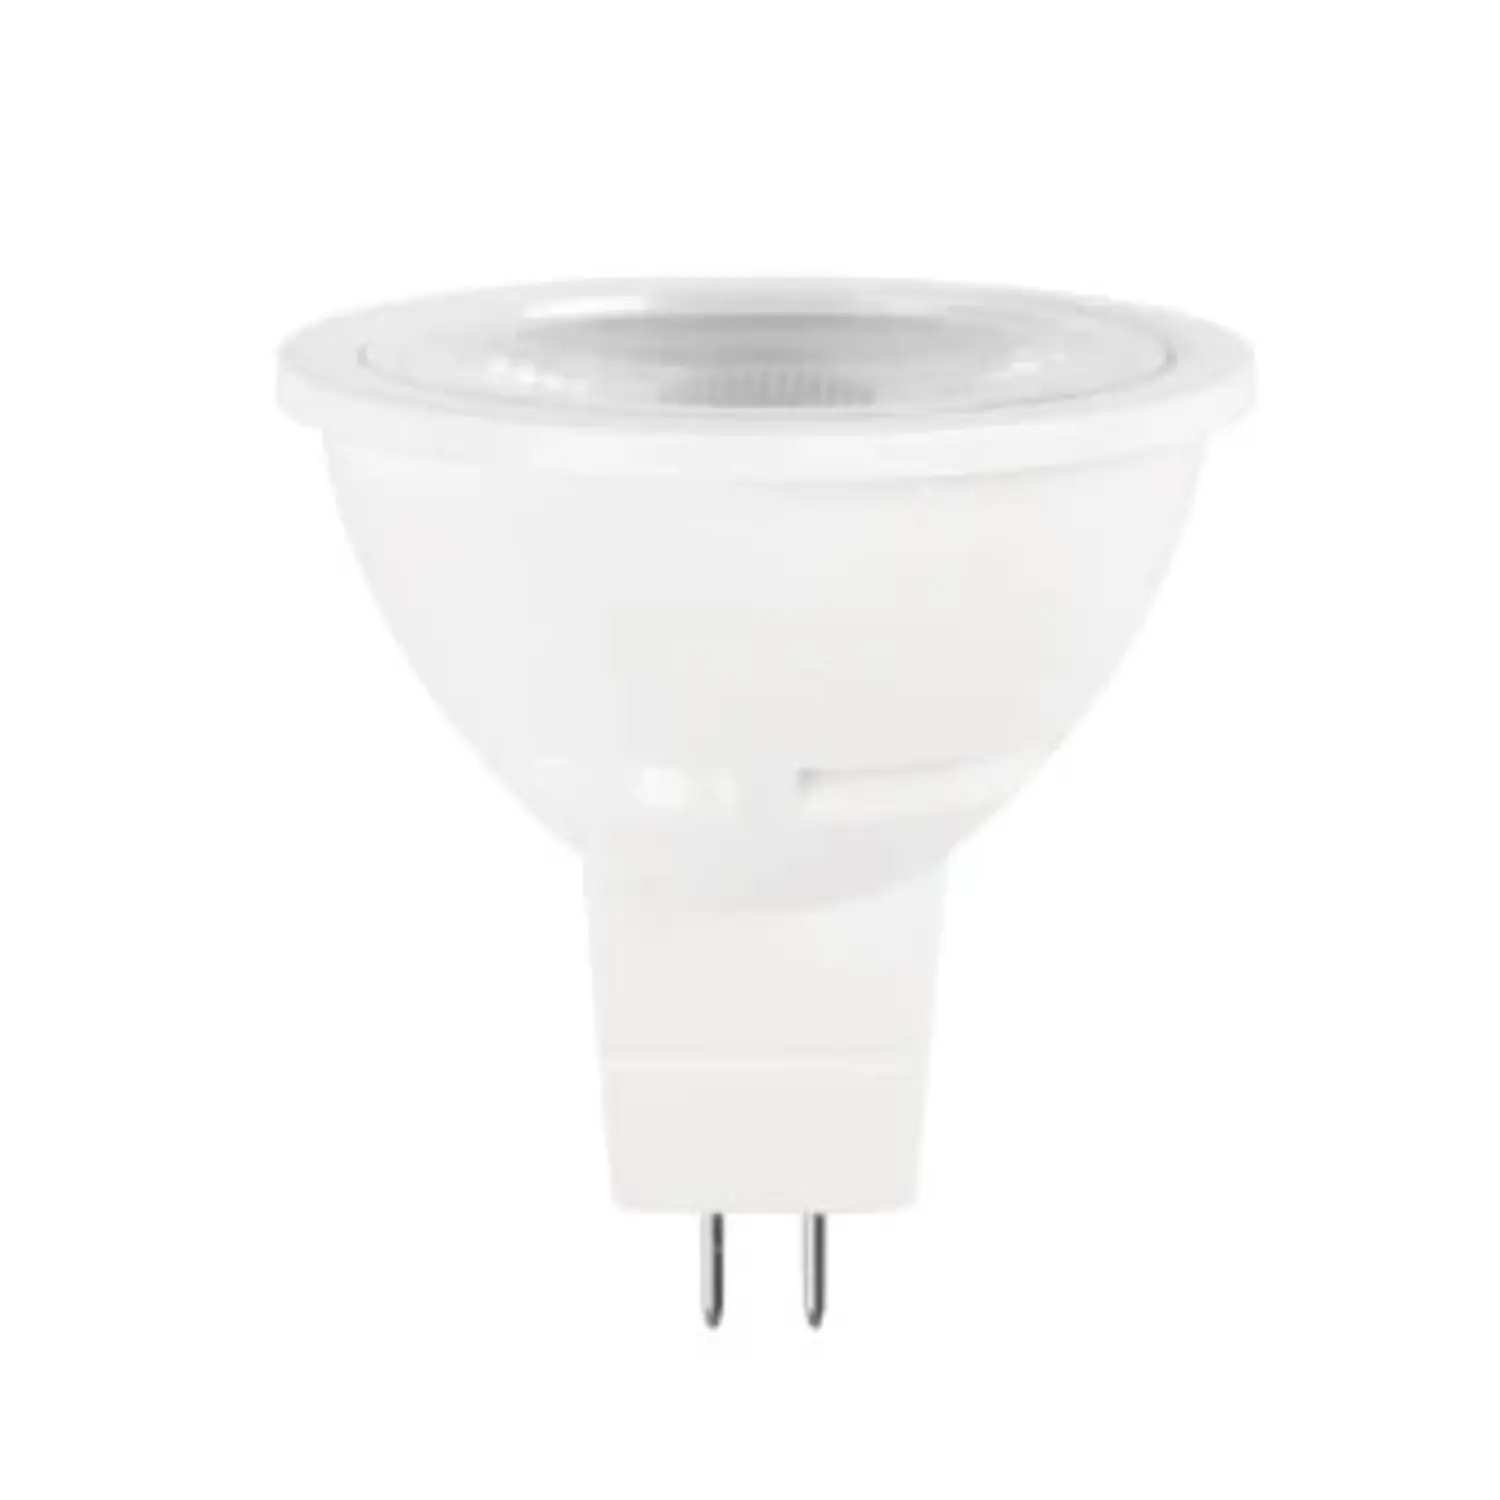 immagine del prodotto lampadina led mr16 faretti incasso 60° 220-240volt 5,50 watt bianco caldo